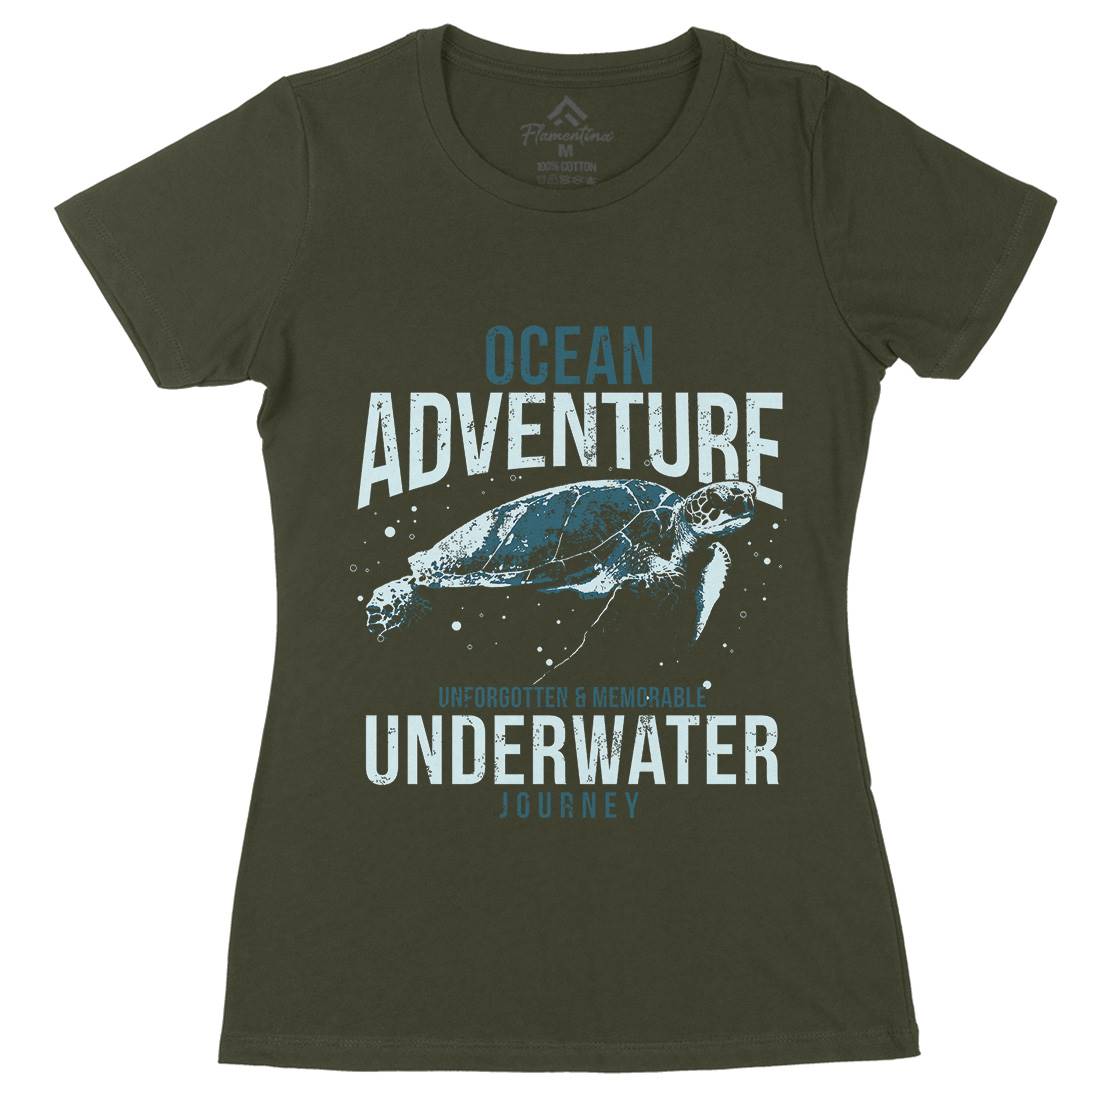 Turtle Journey Womens Organic Crew Neck T-Shirt Animals B772